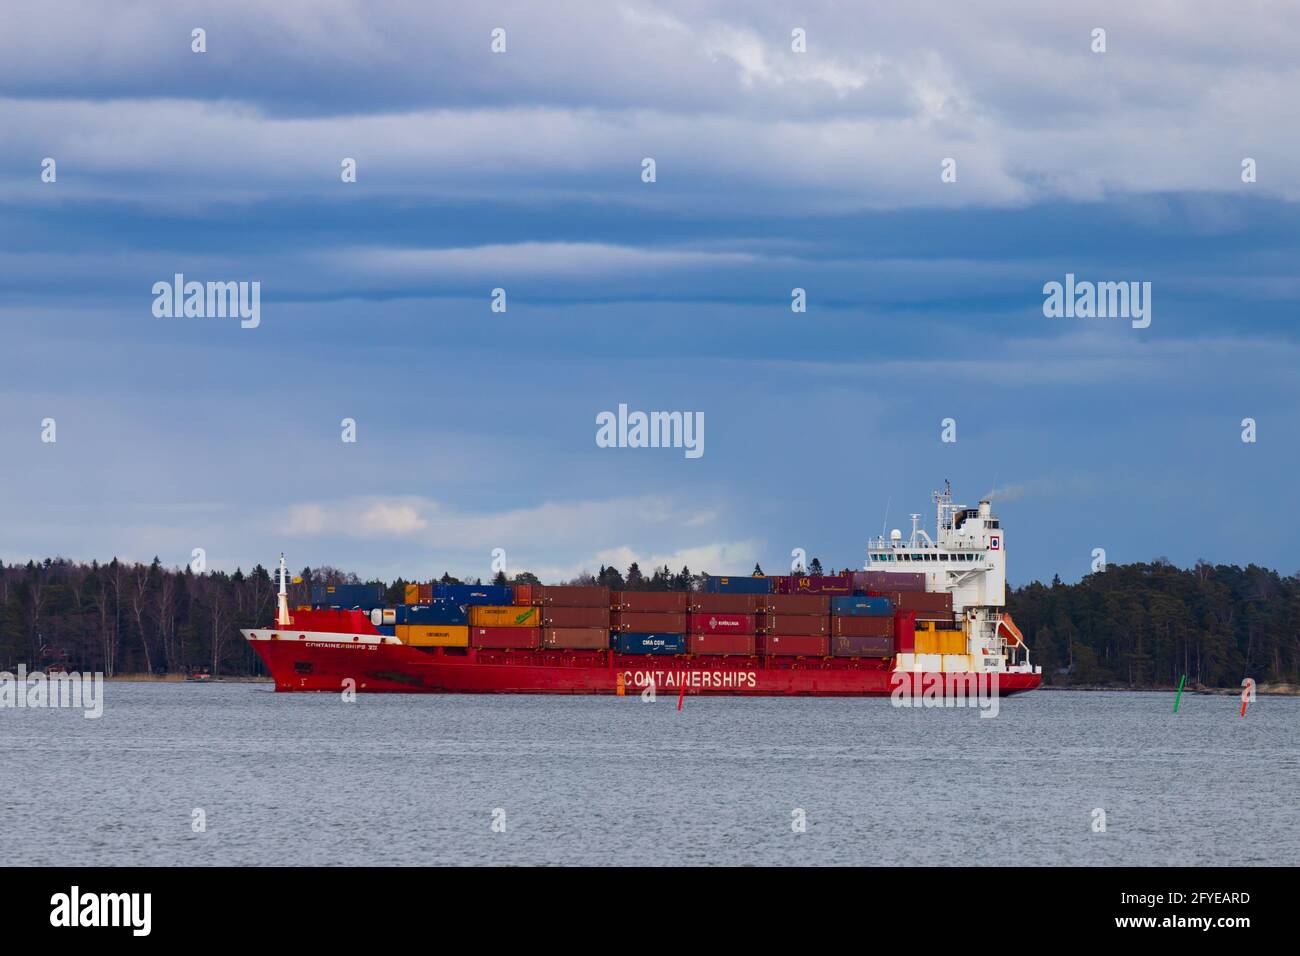 Frachtschiff Containerschiffe VII nähert sich am 3. April 2021 dem Hafen von Vuosaari an. Betrieben von Containerschiffen und unter finnischer Flagge segelnd. Stockfoto